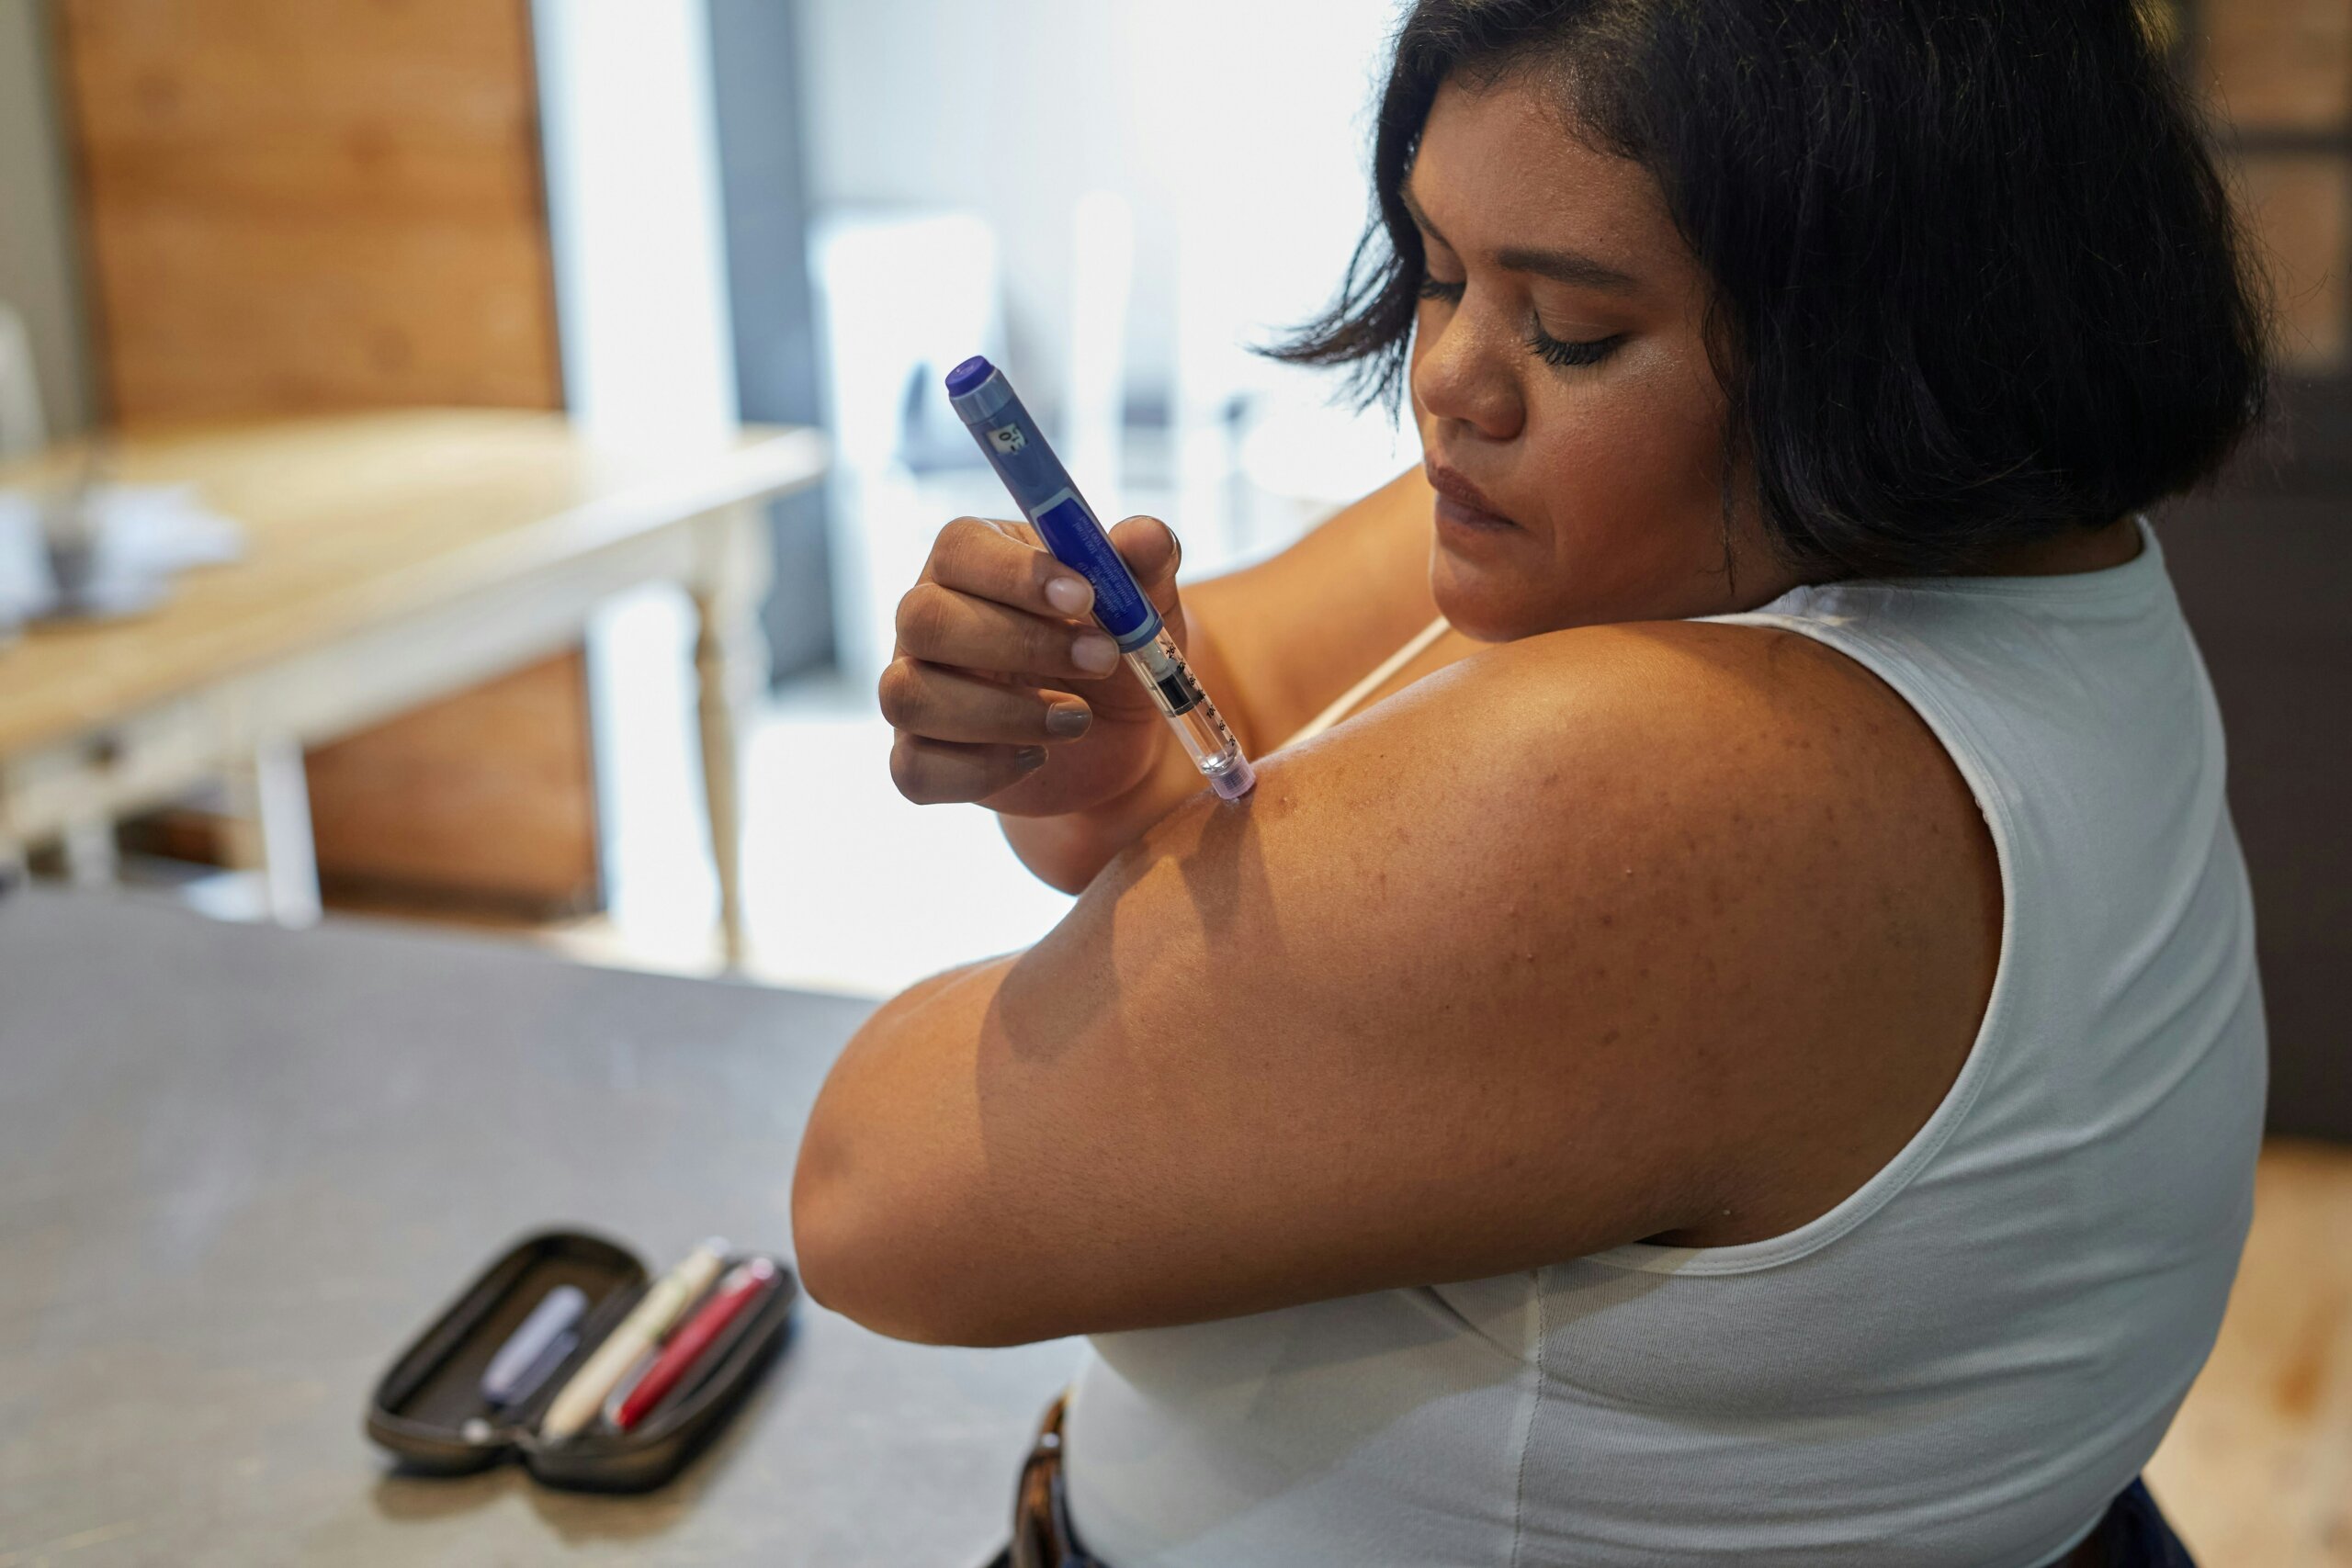 A woman taking insulin